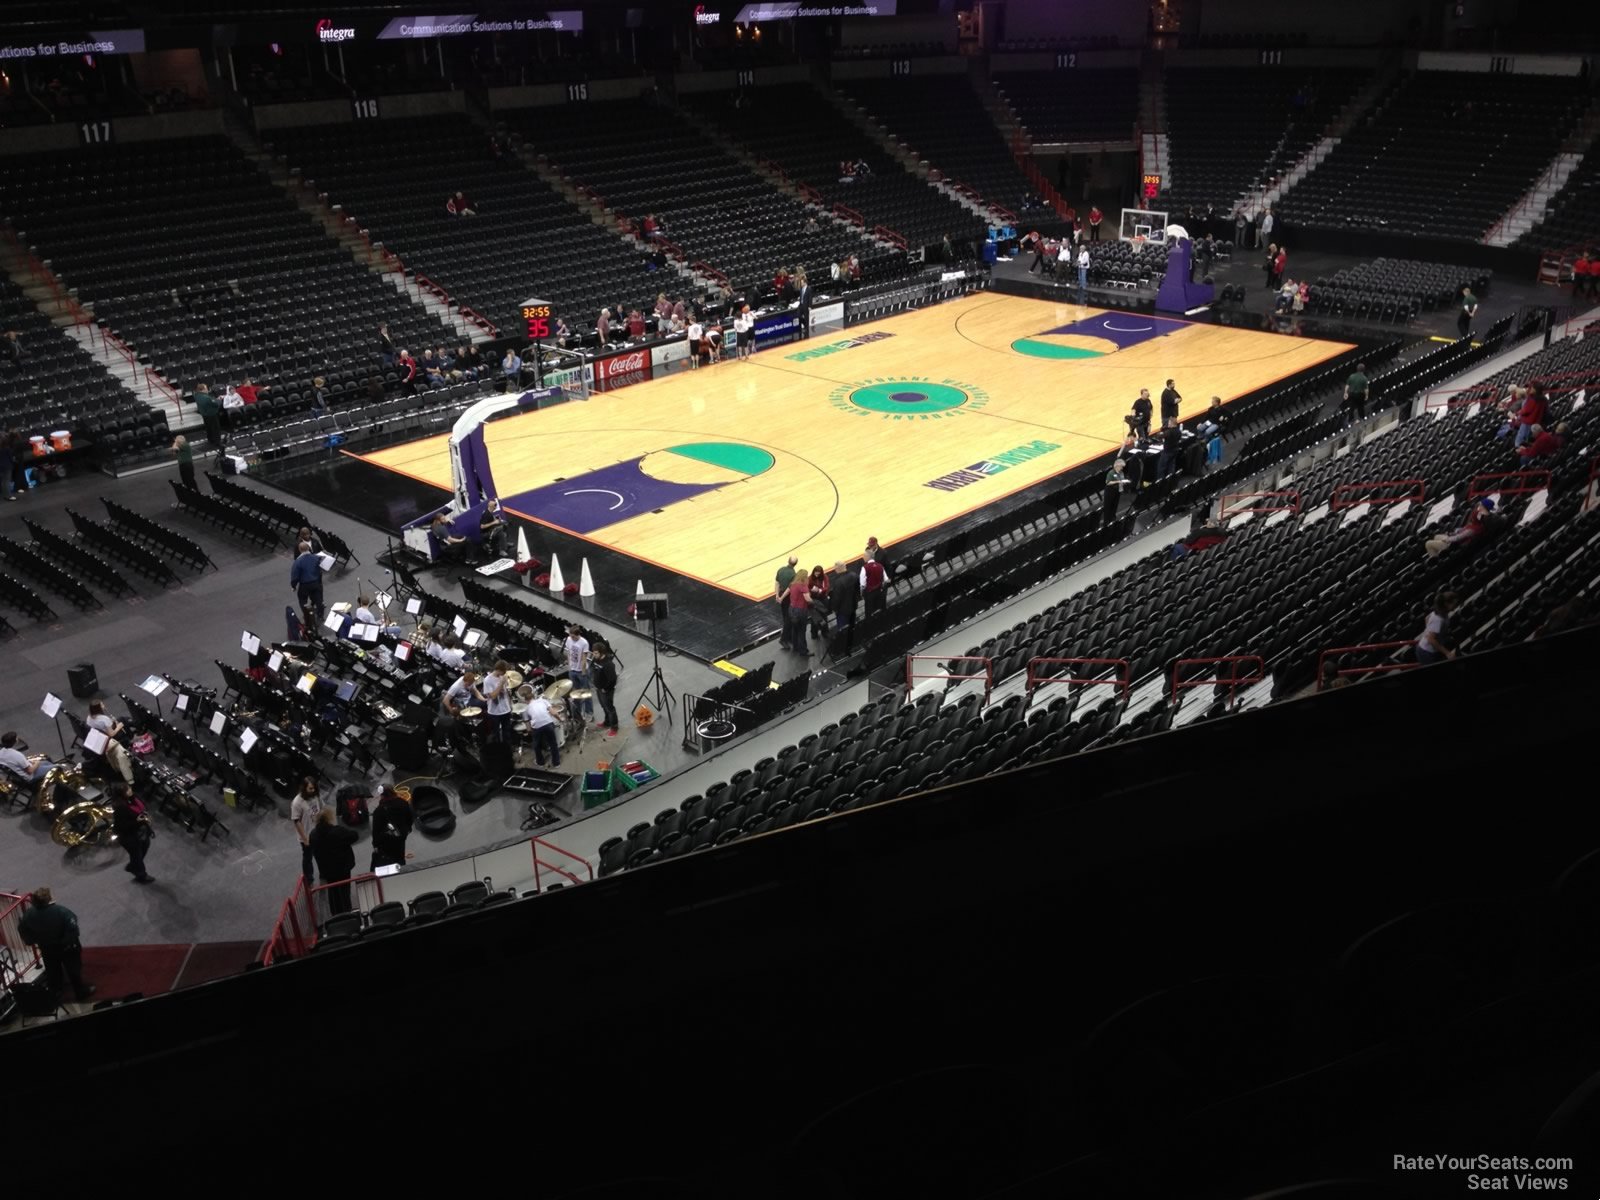 Section 201 at Spokane Arena for Basketball